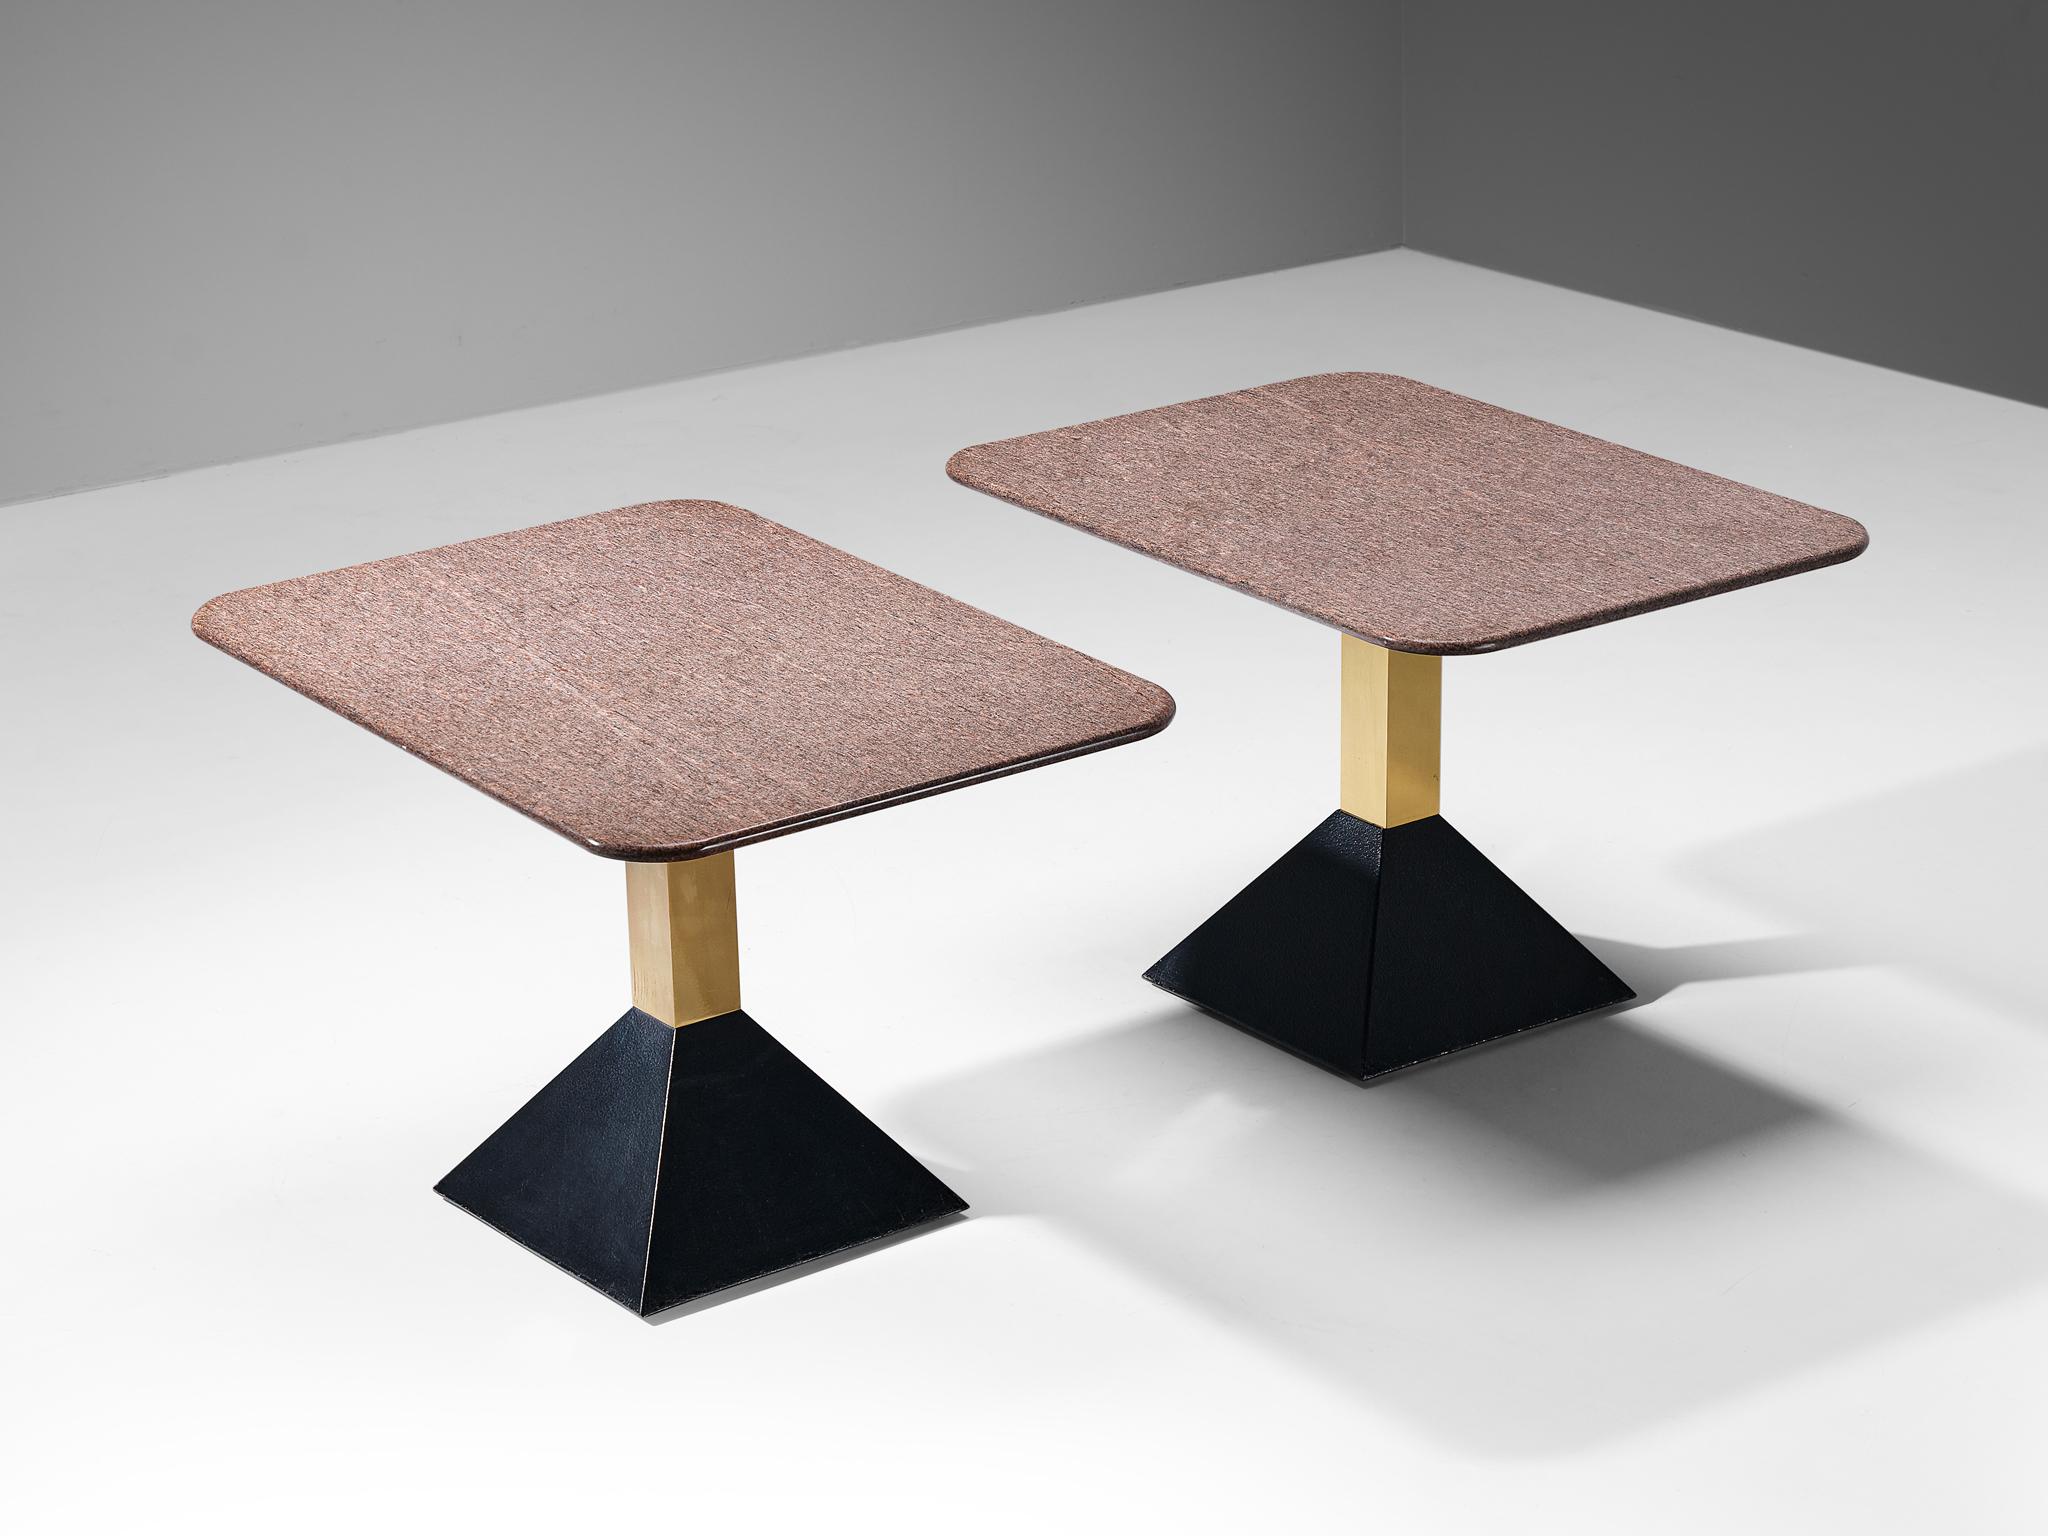 Tables basses, granit, laiton, acier laqué noir, Italie, années 1980

Ces tables d'appoint présentent un plateau en granit brun au format rectangulaire. Le granit présente une surface vive. Un socle en laiton se termine par une base trapézoïdale